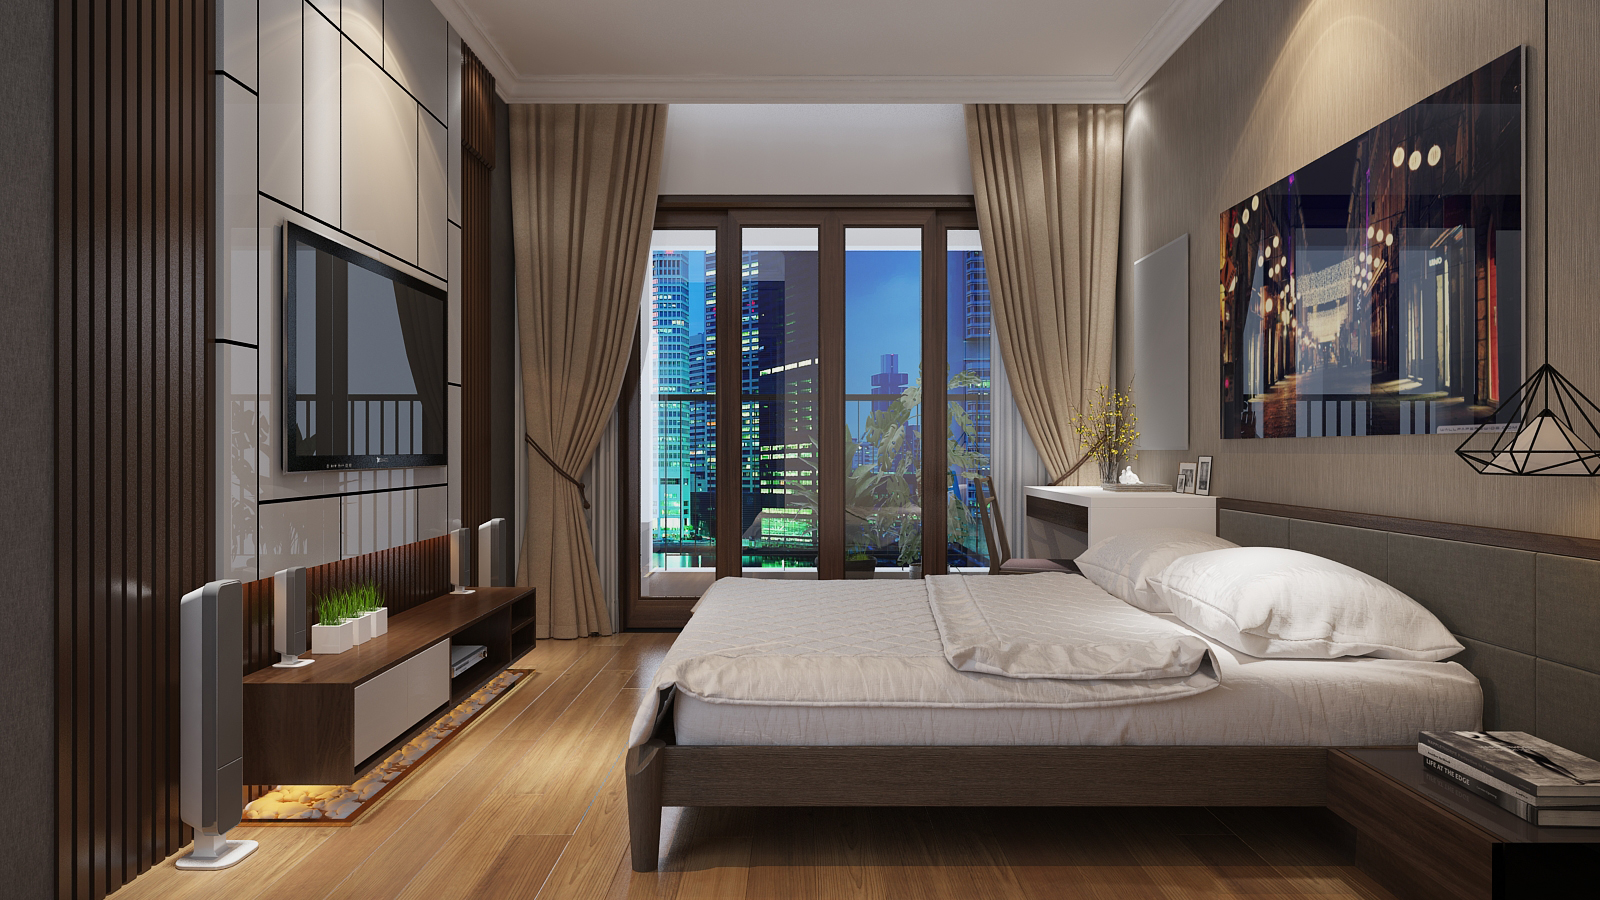 Thiết kế nội thất Chung Cư tại Hà Nội Thiết kế nội thất căn hộ chung cư Royal City - R108 1614415041 11